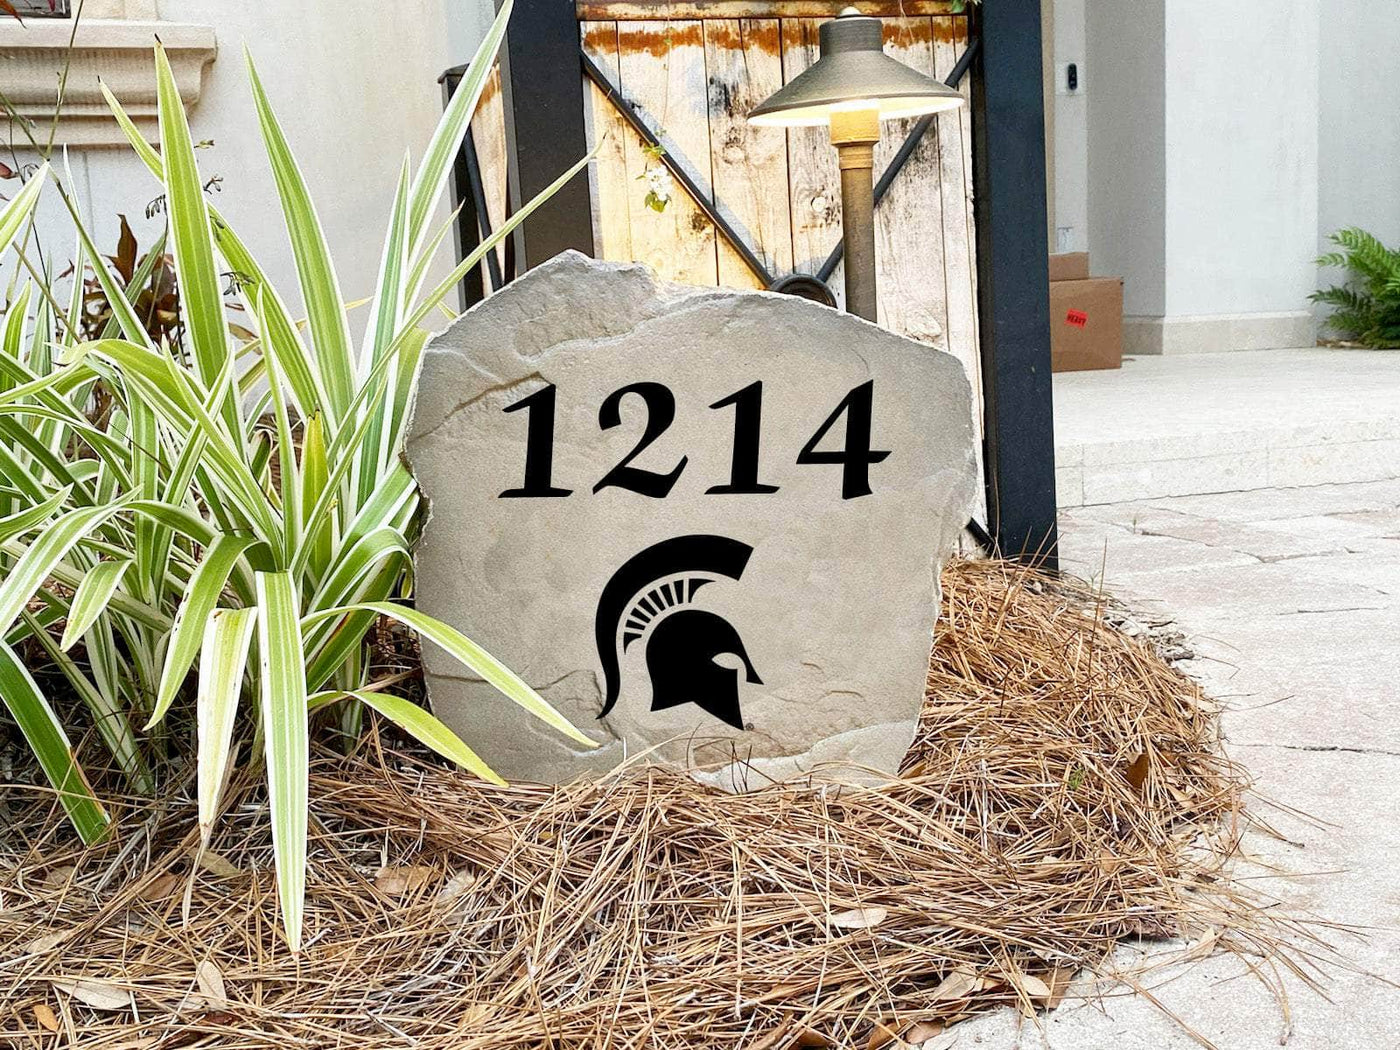 Michigan State University Address Stone